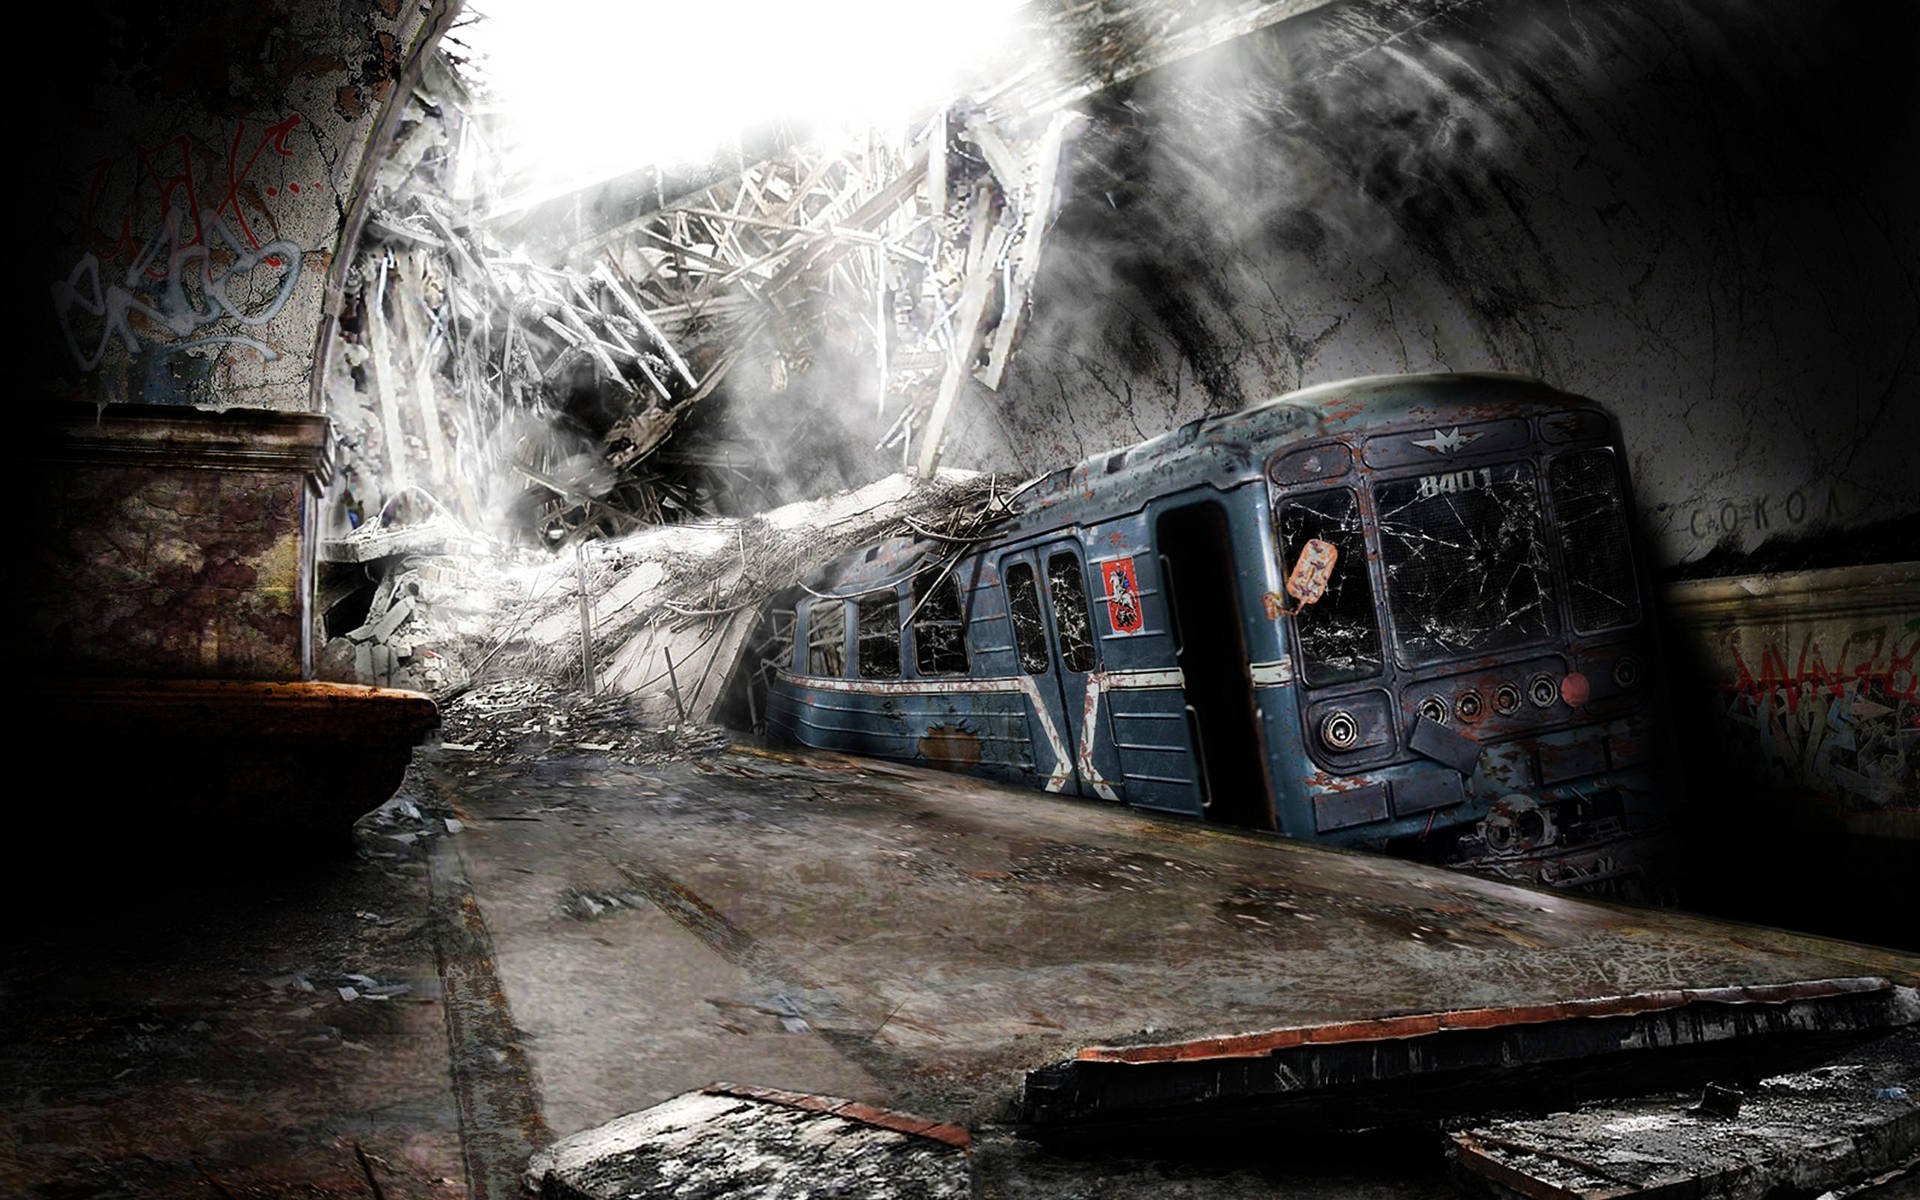 London underground steam фото 104